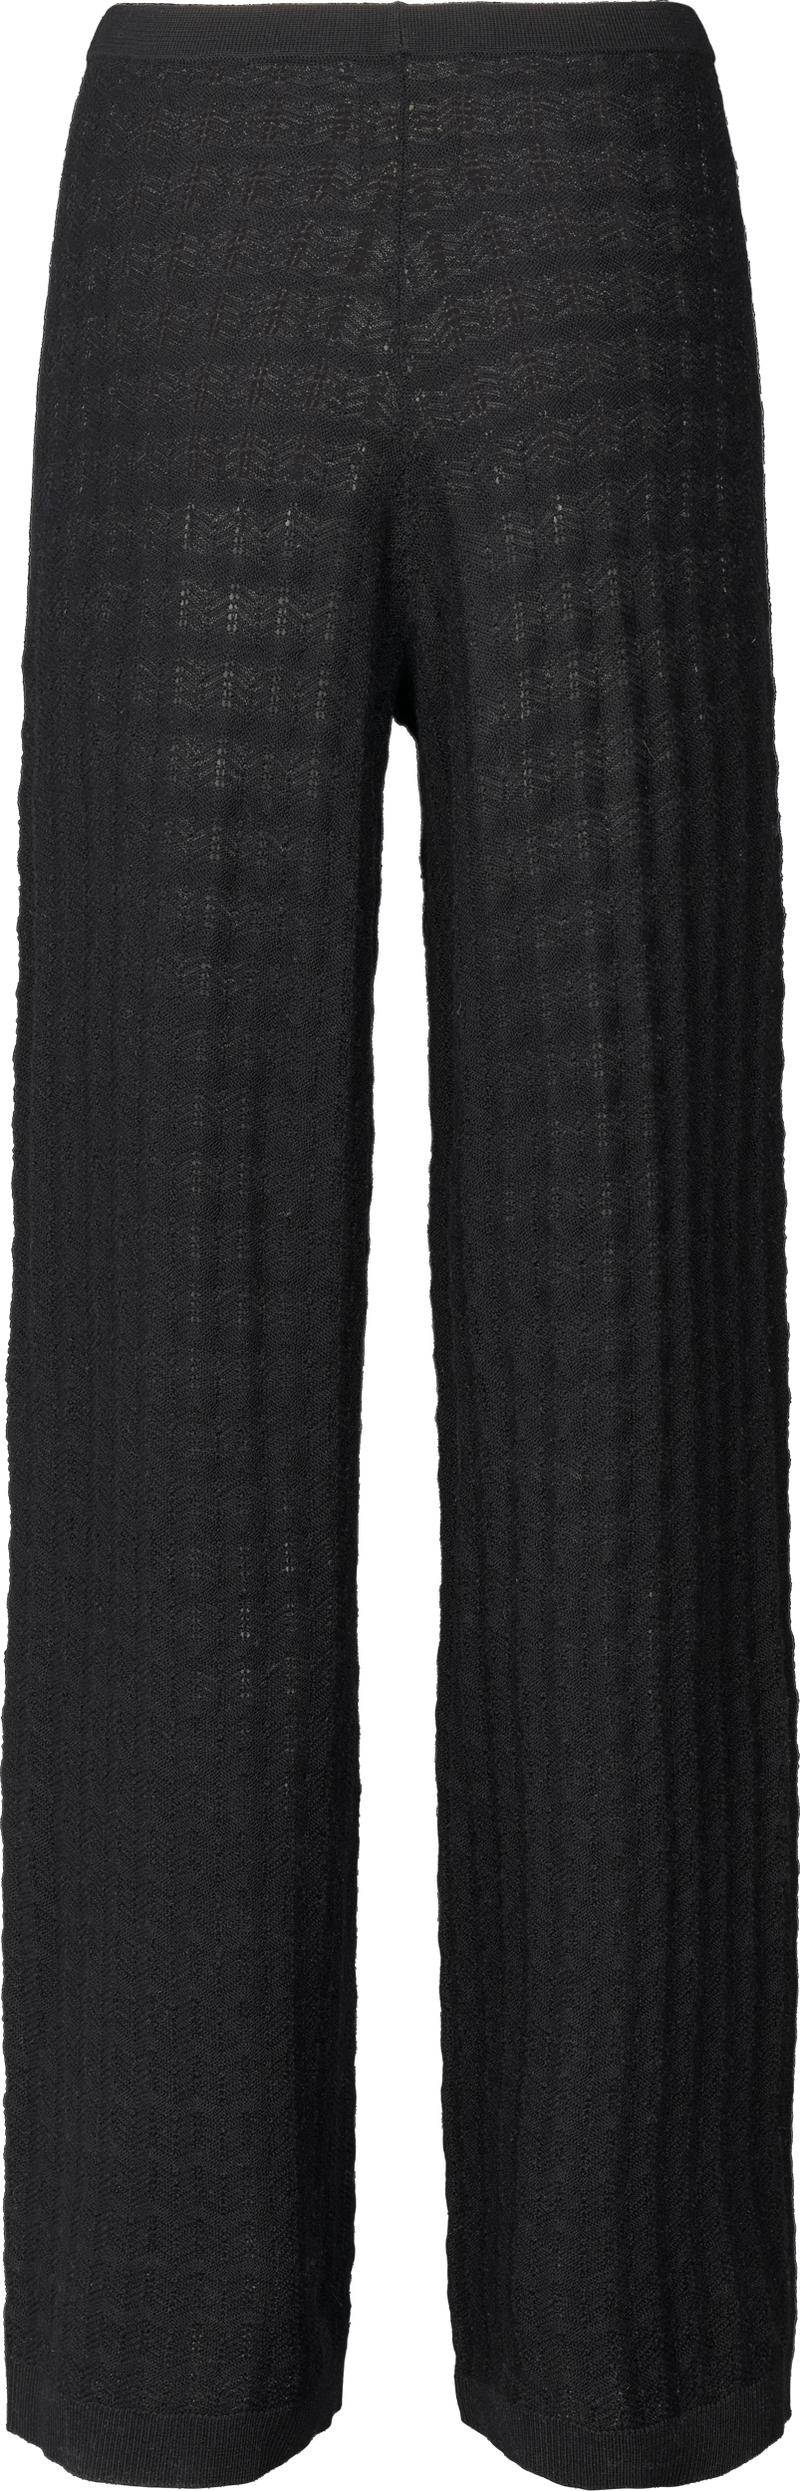 GAI+LISVA Petra Knit Jaquard Knit 650 Black